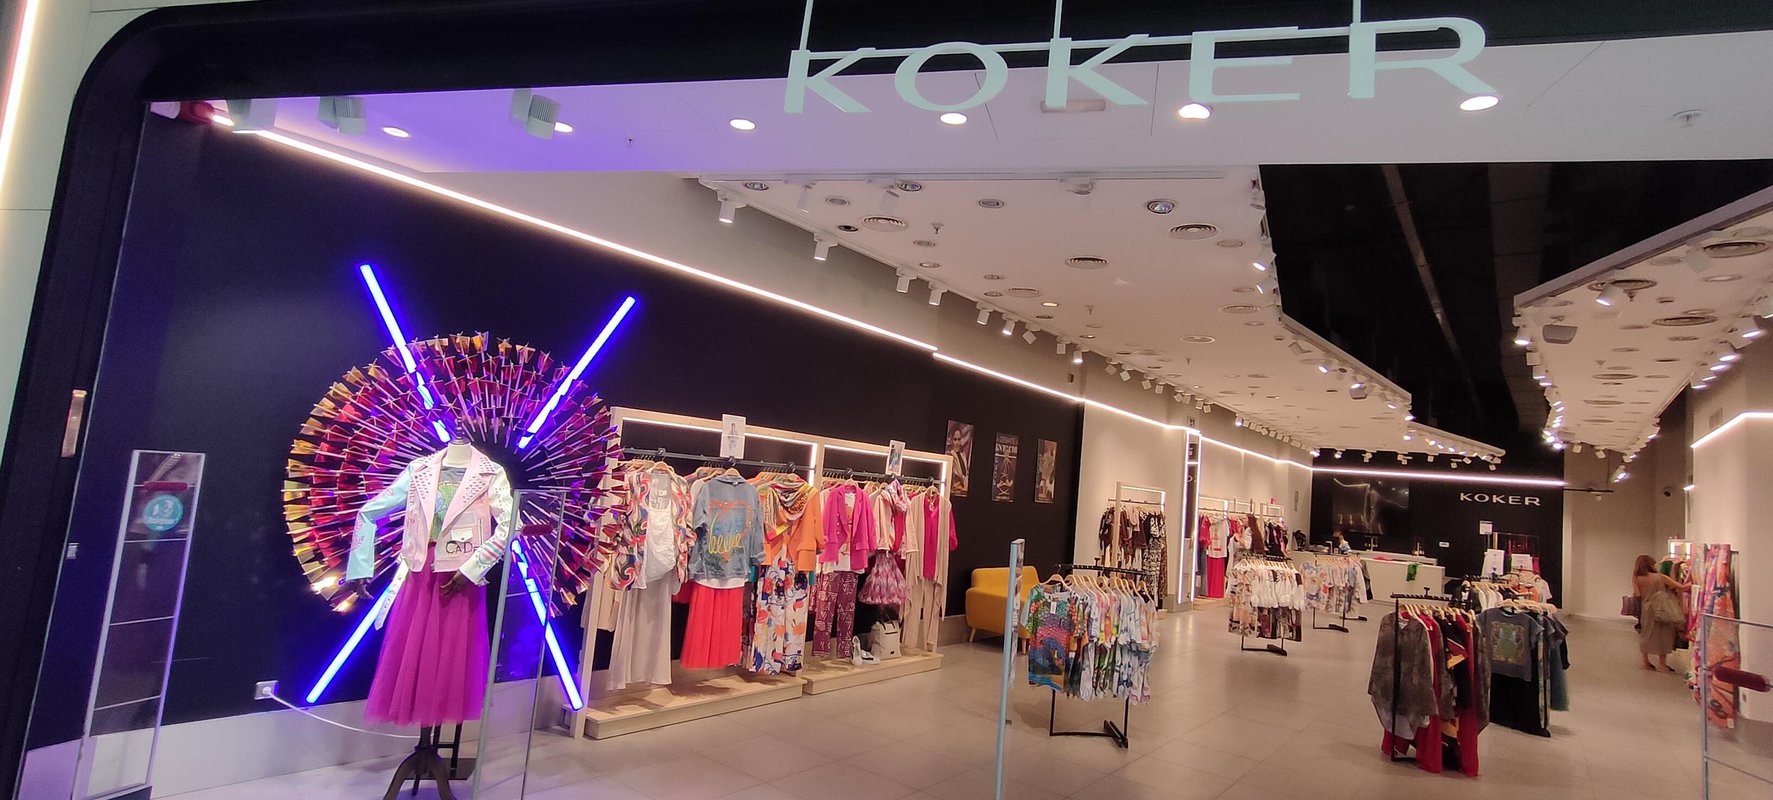 H2O amplía su oferta de moda con la apertura de Koker